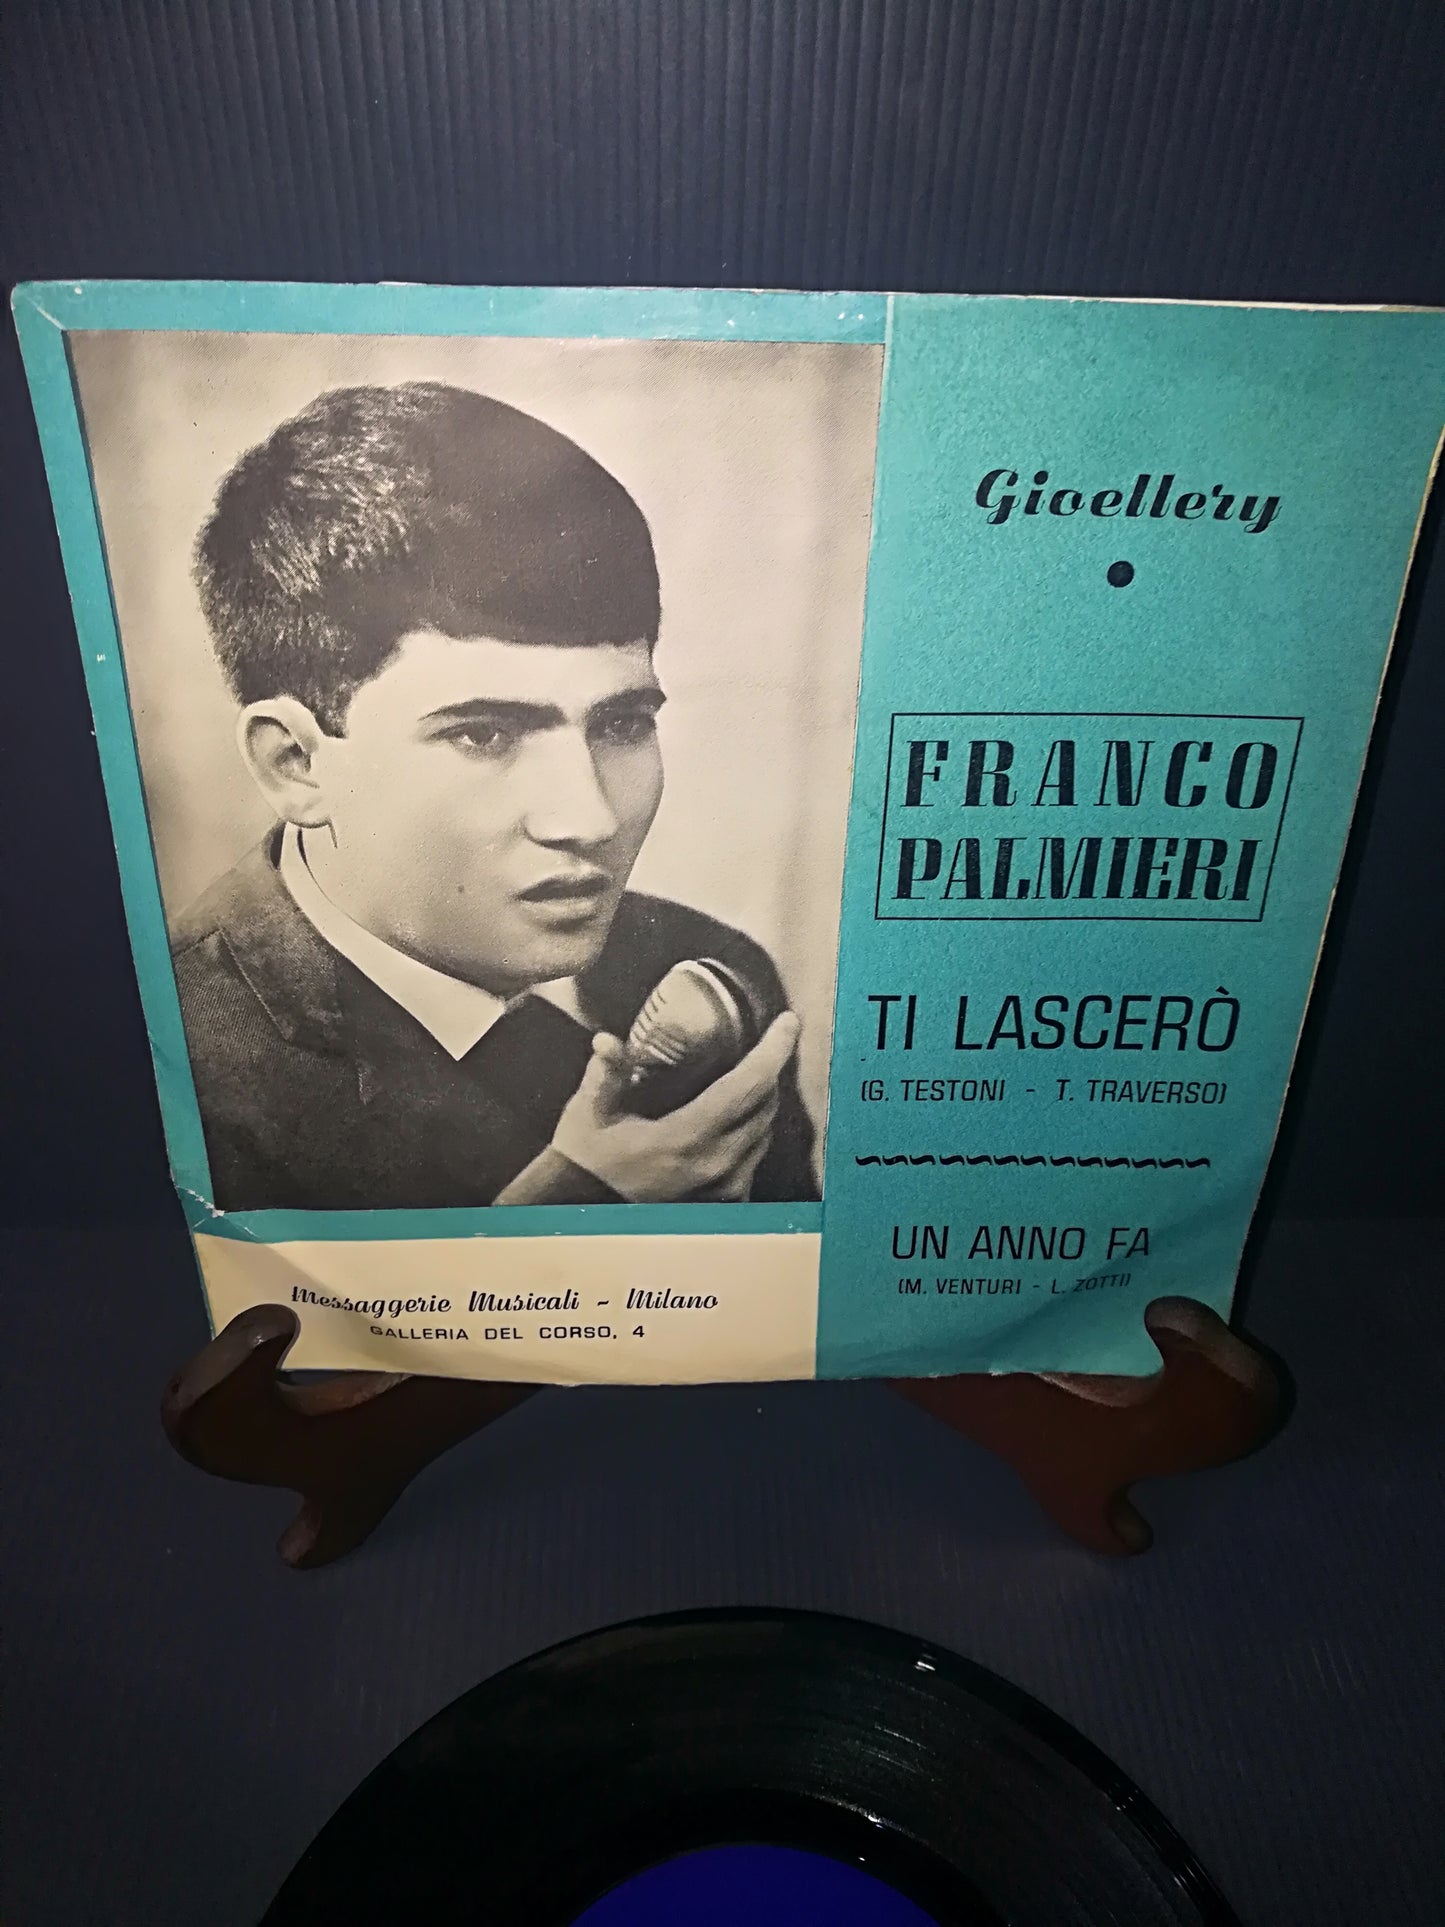 Un Anno Fa/Ti Lascerò" Franco Palmieri 45 Giri

Edito da Gioellery 